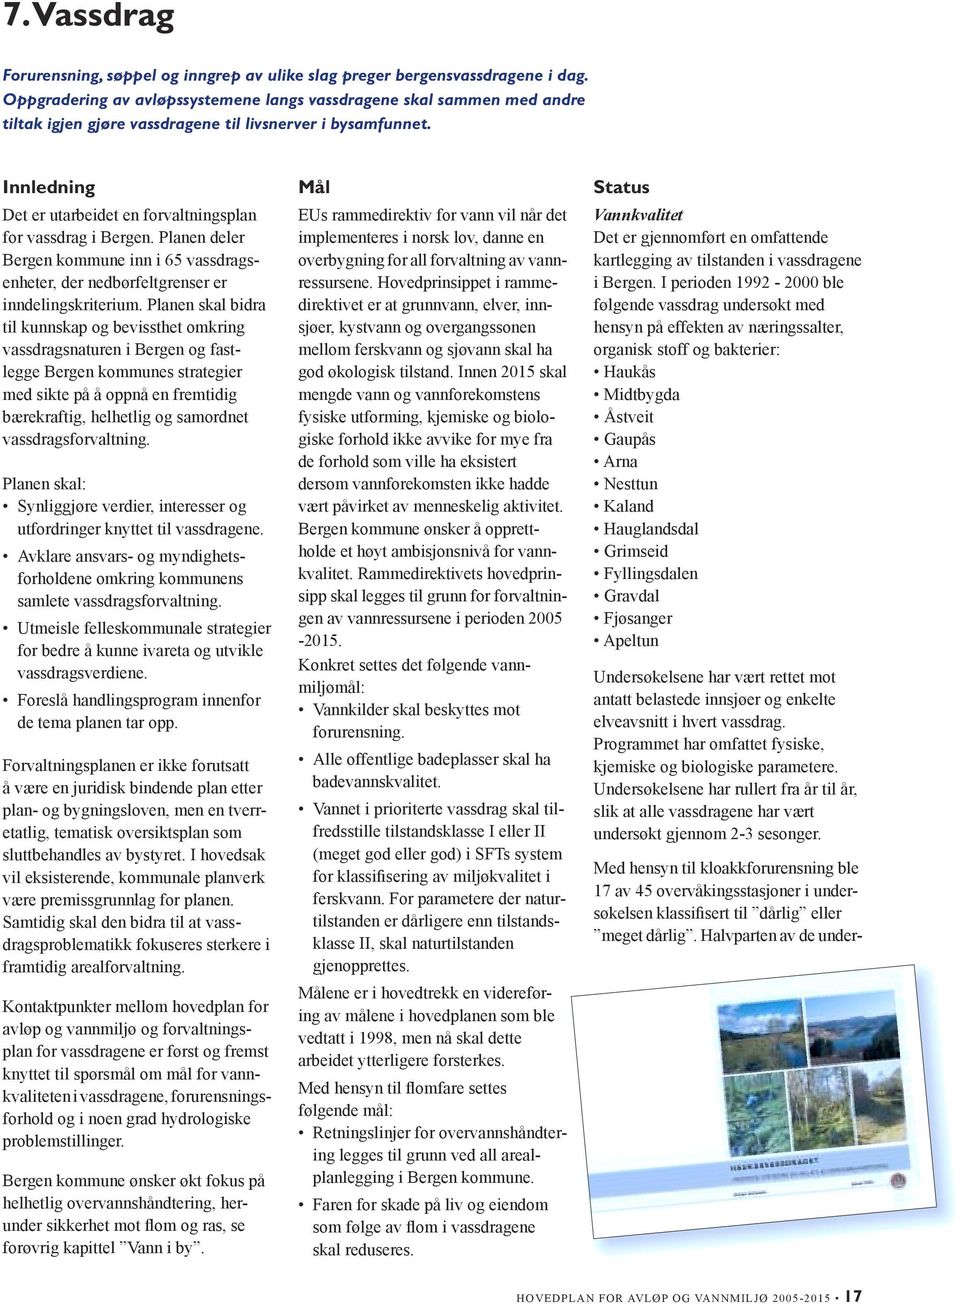 Innledning Det er utarbeidet en forvaltningsplan for vassdrag i Bergen. Planen deler Bergen kommune inn i 65 vassdragsenheter, der nedbørfeltgrenser er inndelingskriterium.